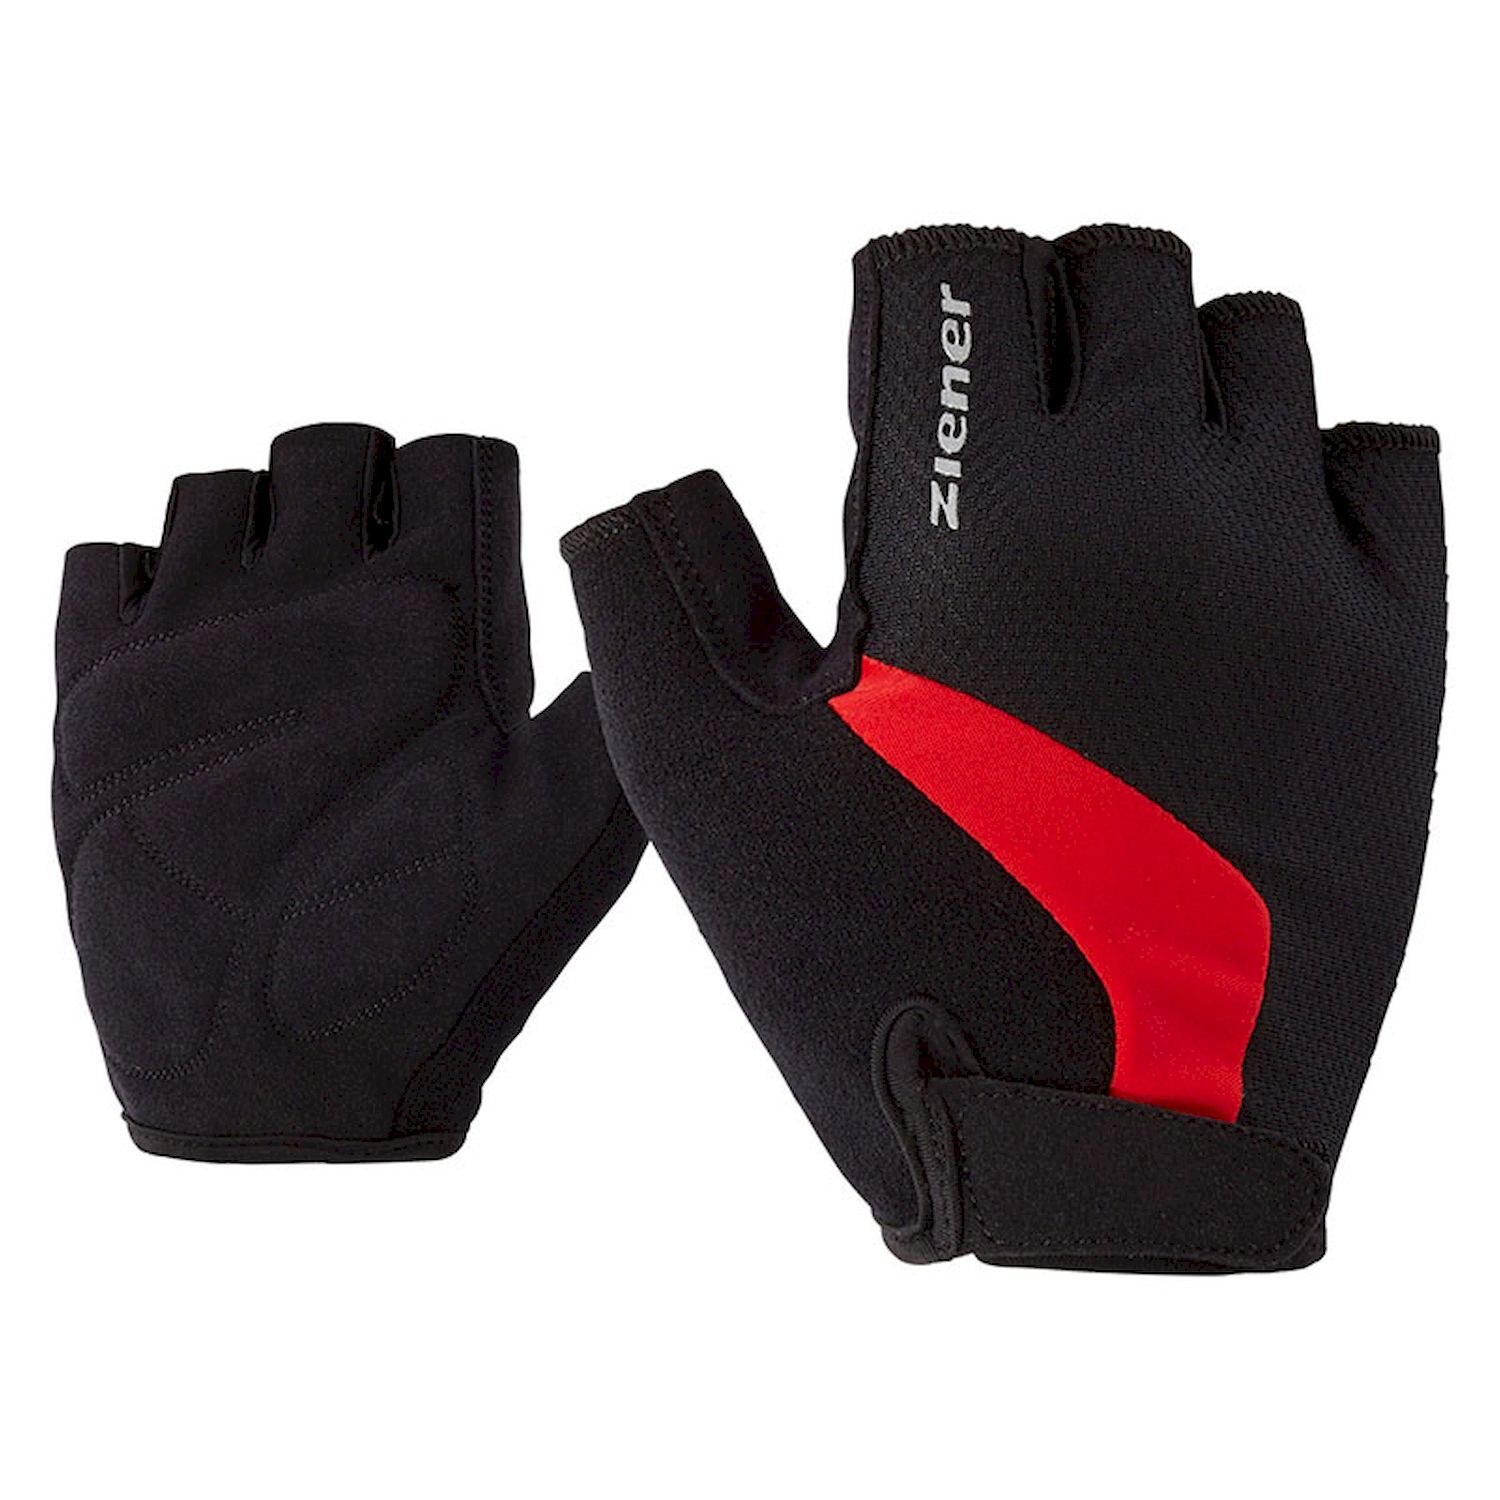 Ziener Crido - Cycling gloves - Men's